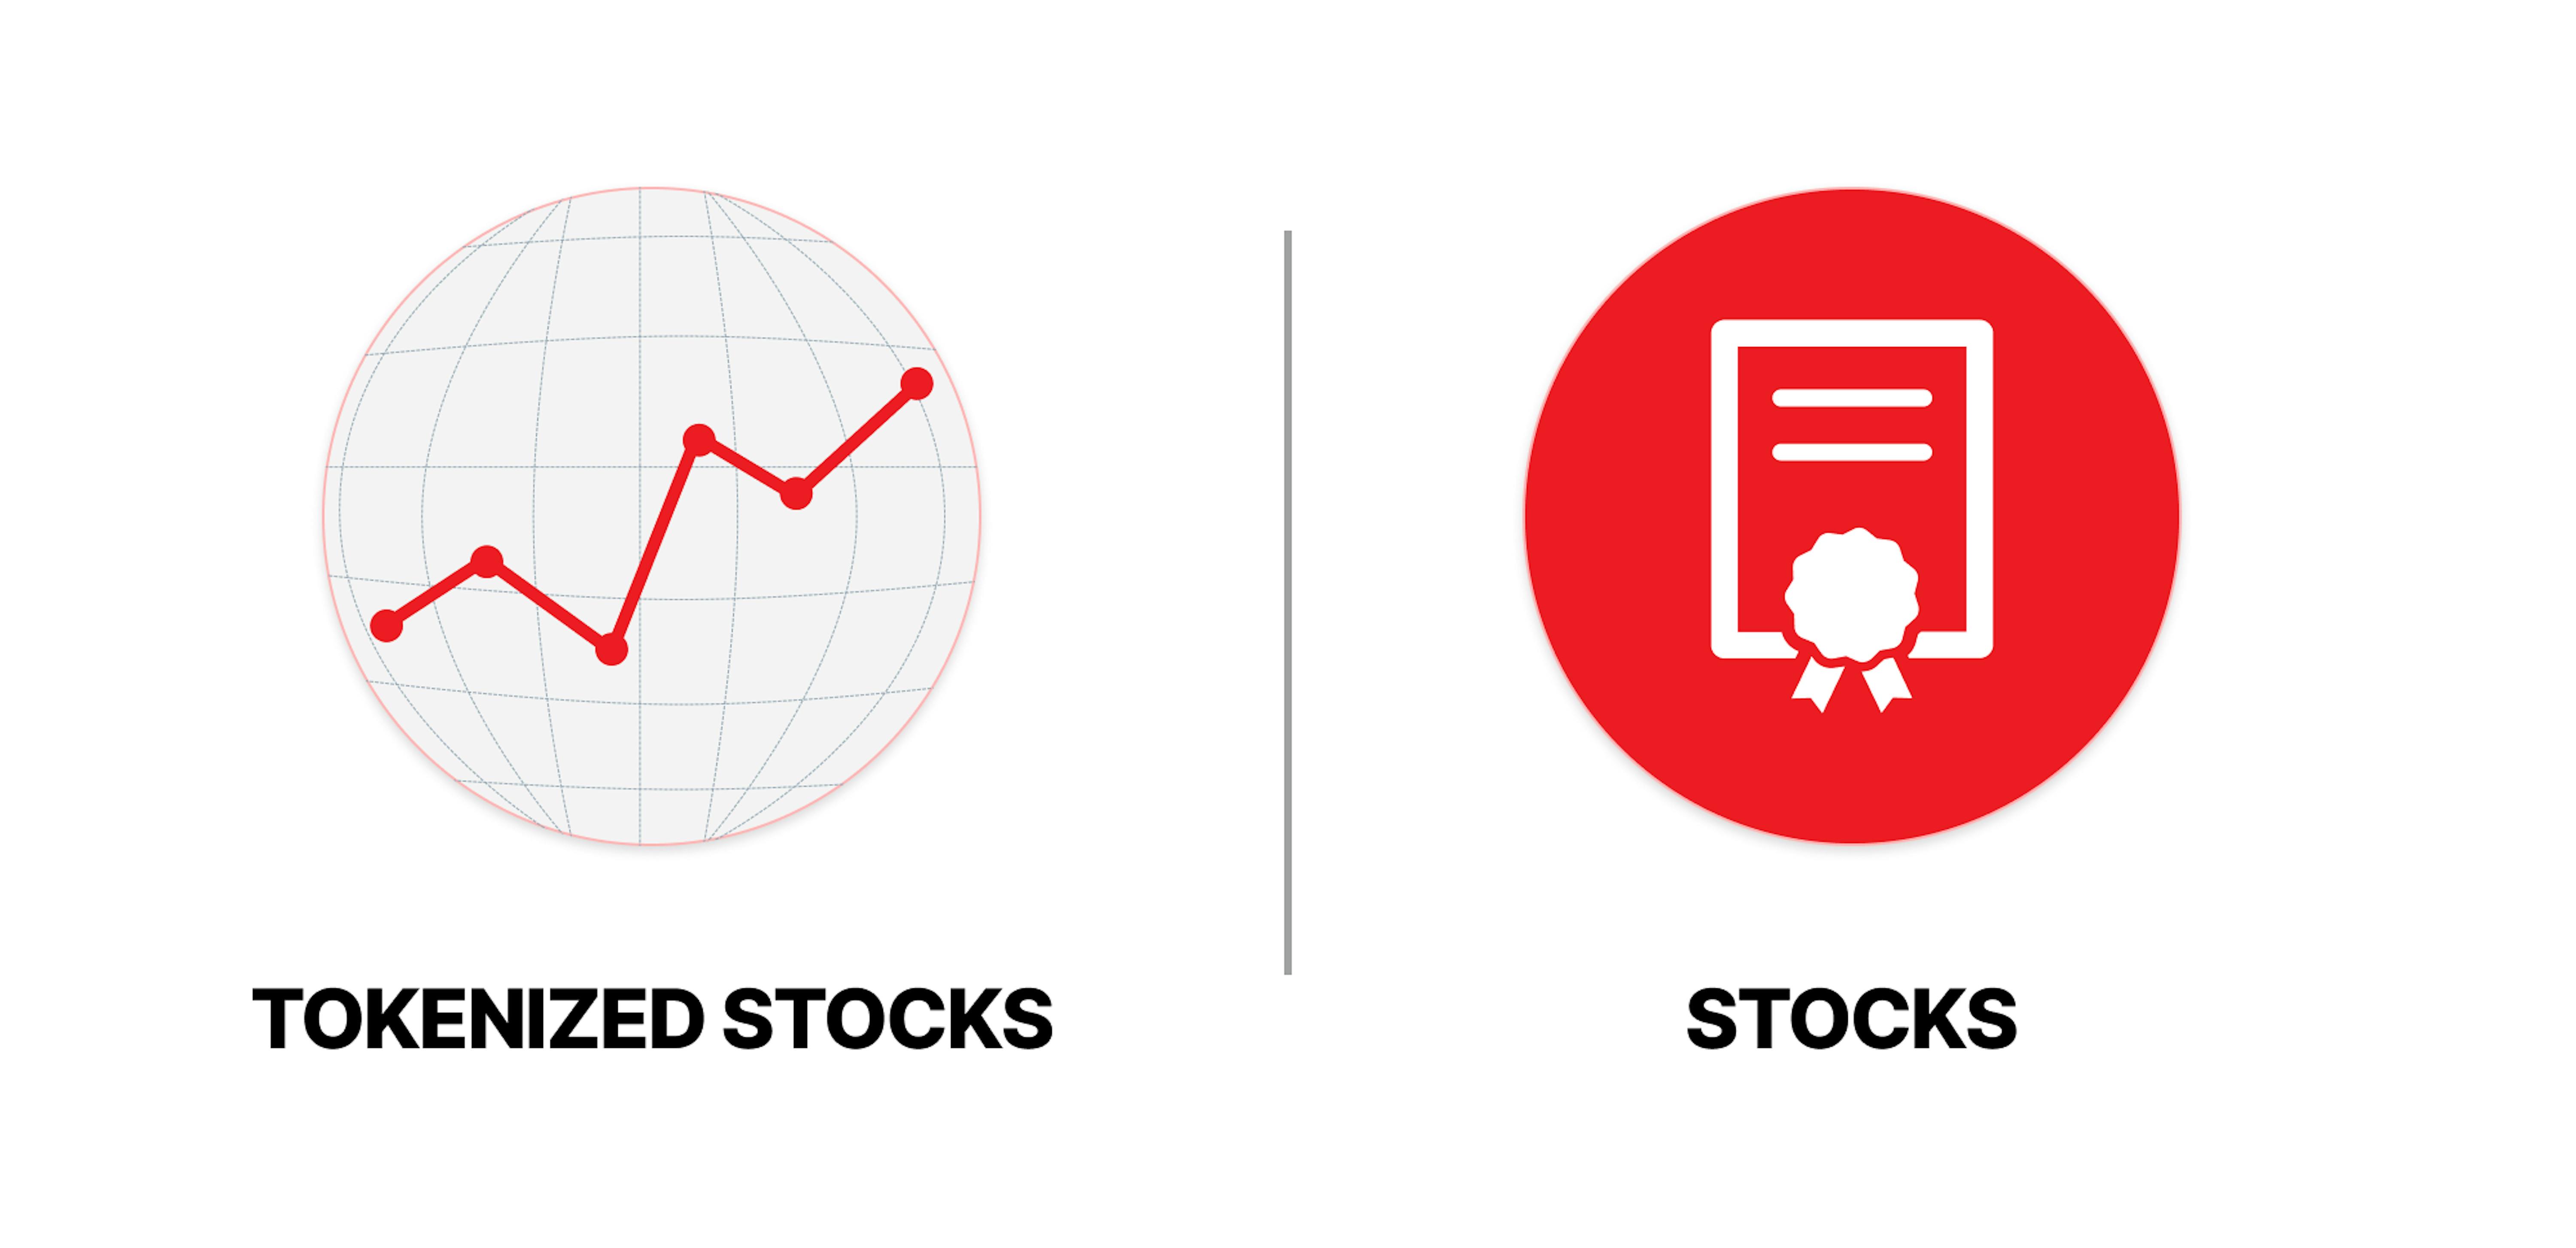 Tokenized stocks vs stocks.